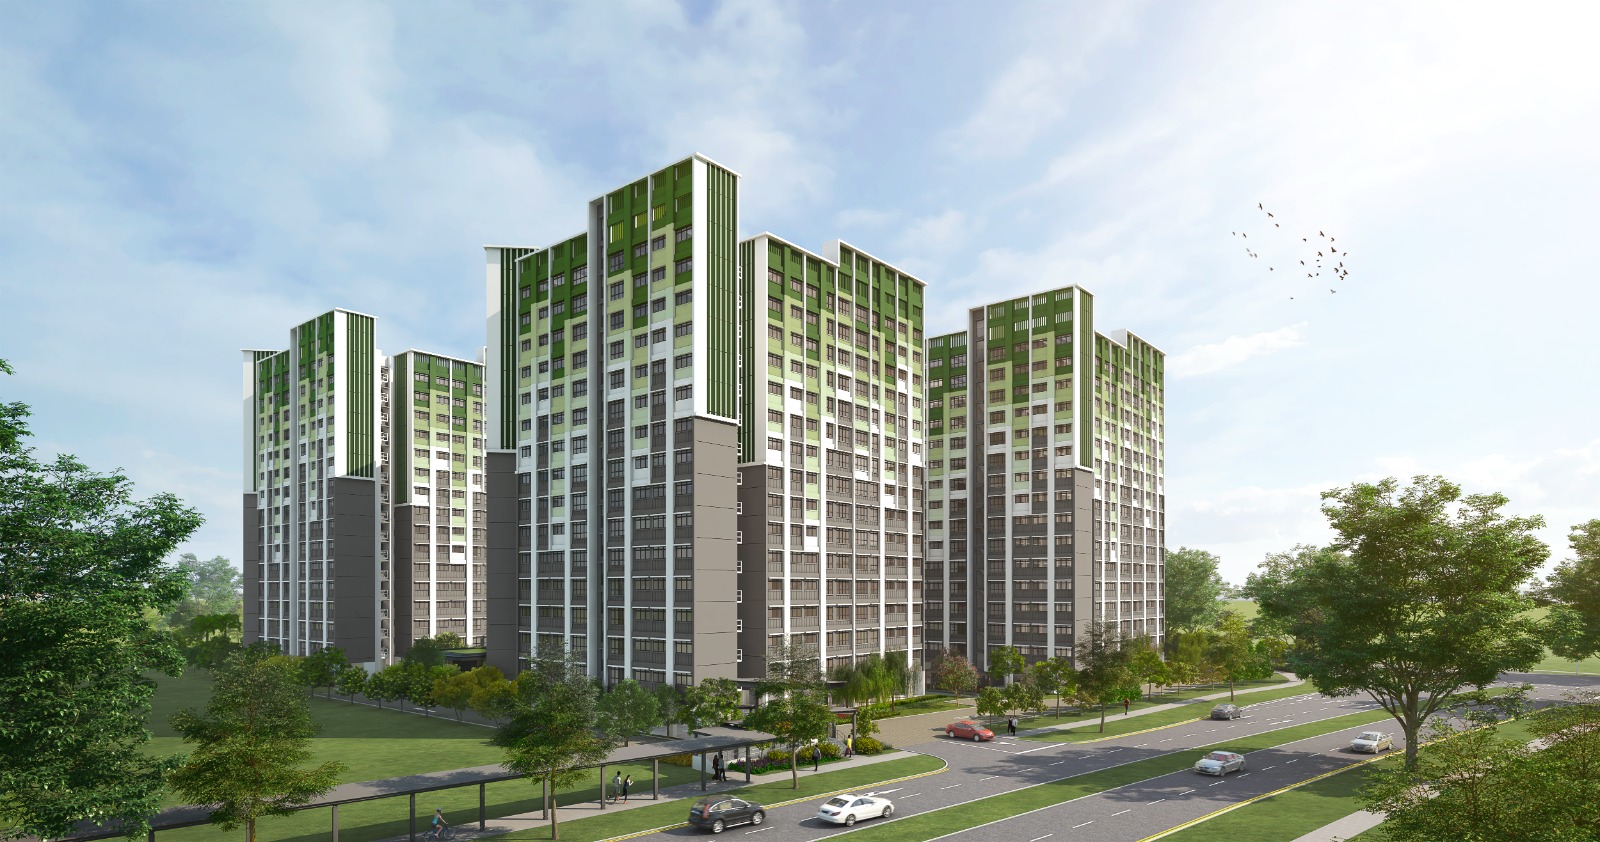 HDB launches 7,862 flats in 8 estates, including Ang Mo Kio, Bishan ...